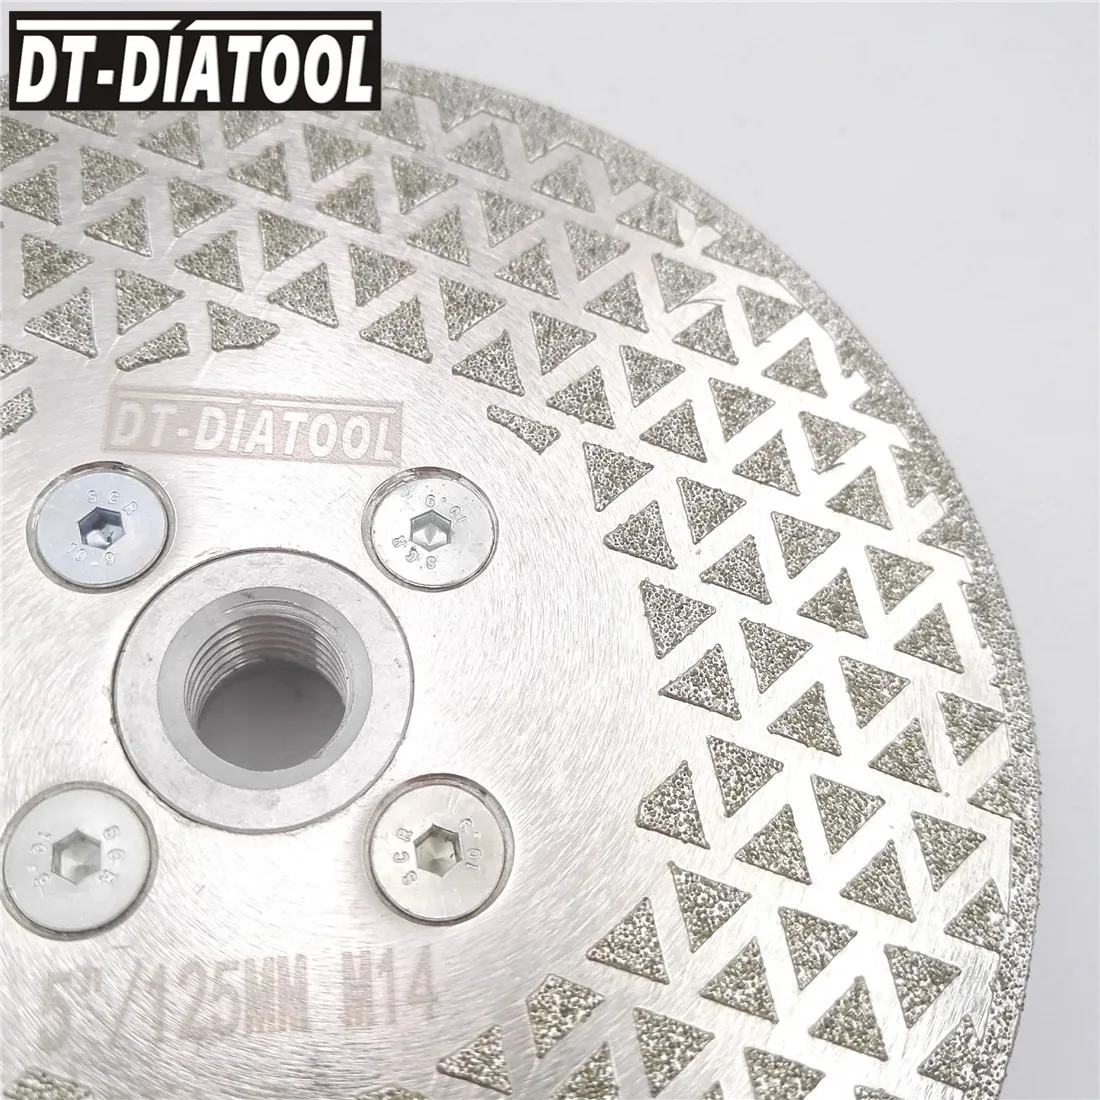 DT-DIATOOL 2шт 125 мм Гальваническое алмазное режущее дисковое шлифовальное колесо с двухсторонним покрытием M14 для шлифовальной машины 5 дюймов п... от AliExpress RU&CIS NEW